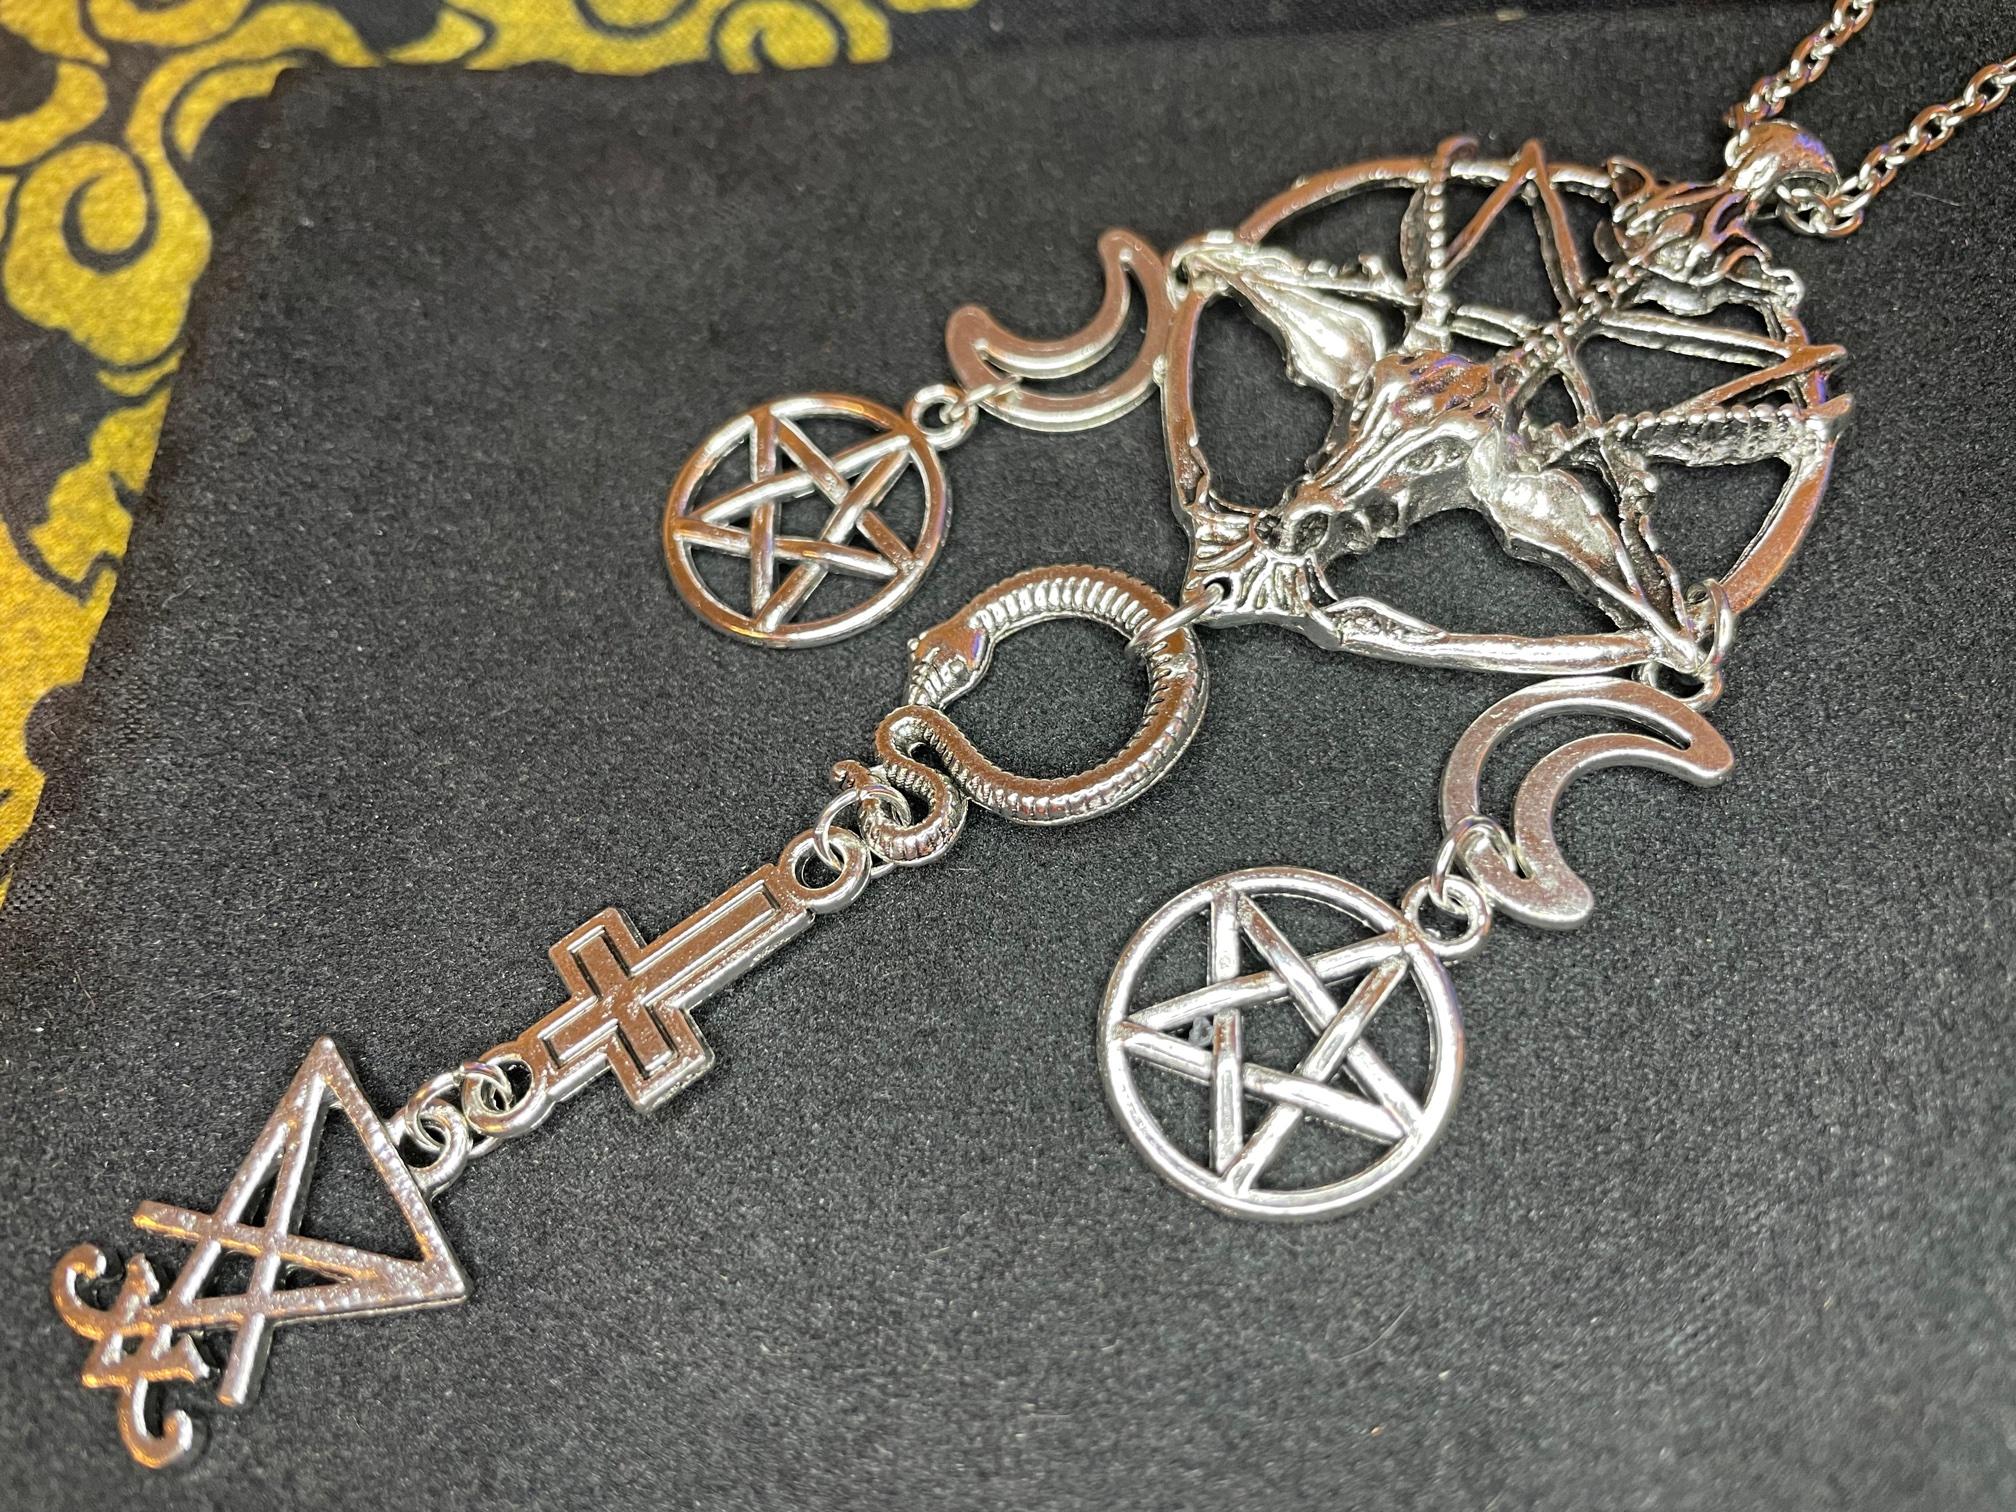 satanic baphomet sigil of lucifer pentagram crescent moon inverted pentagram snake upside down cross necklace